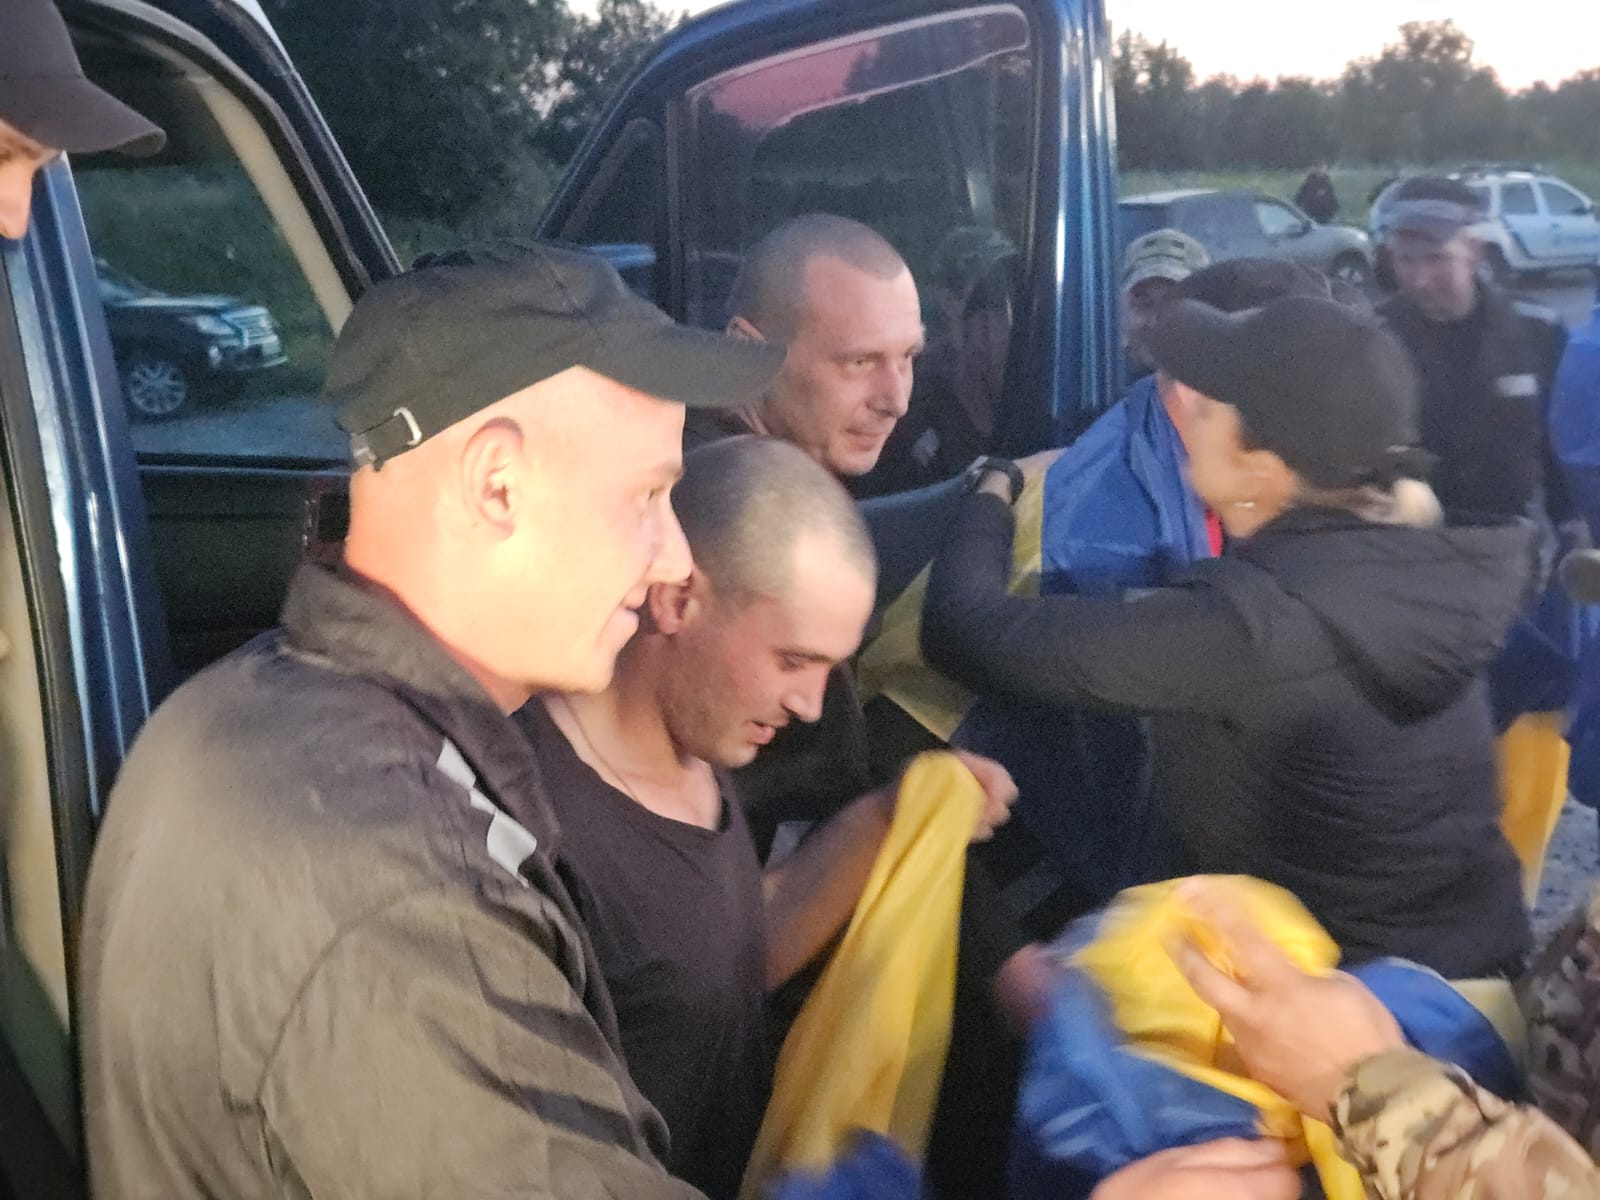 Ще 90 людей повернули з російського полону в Україну